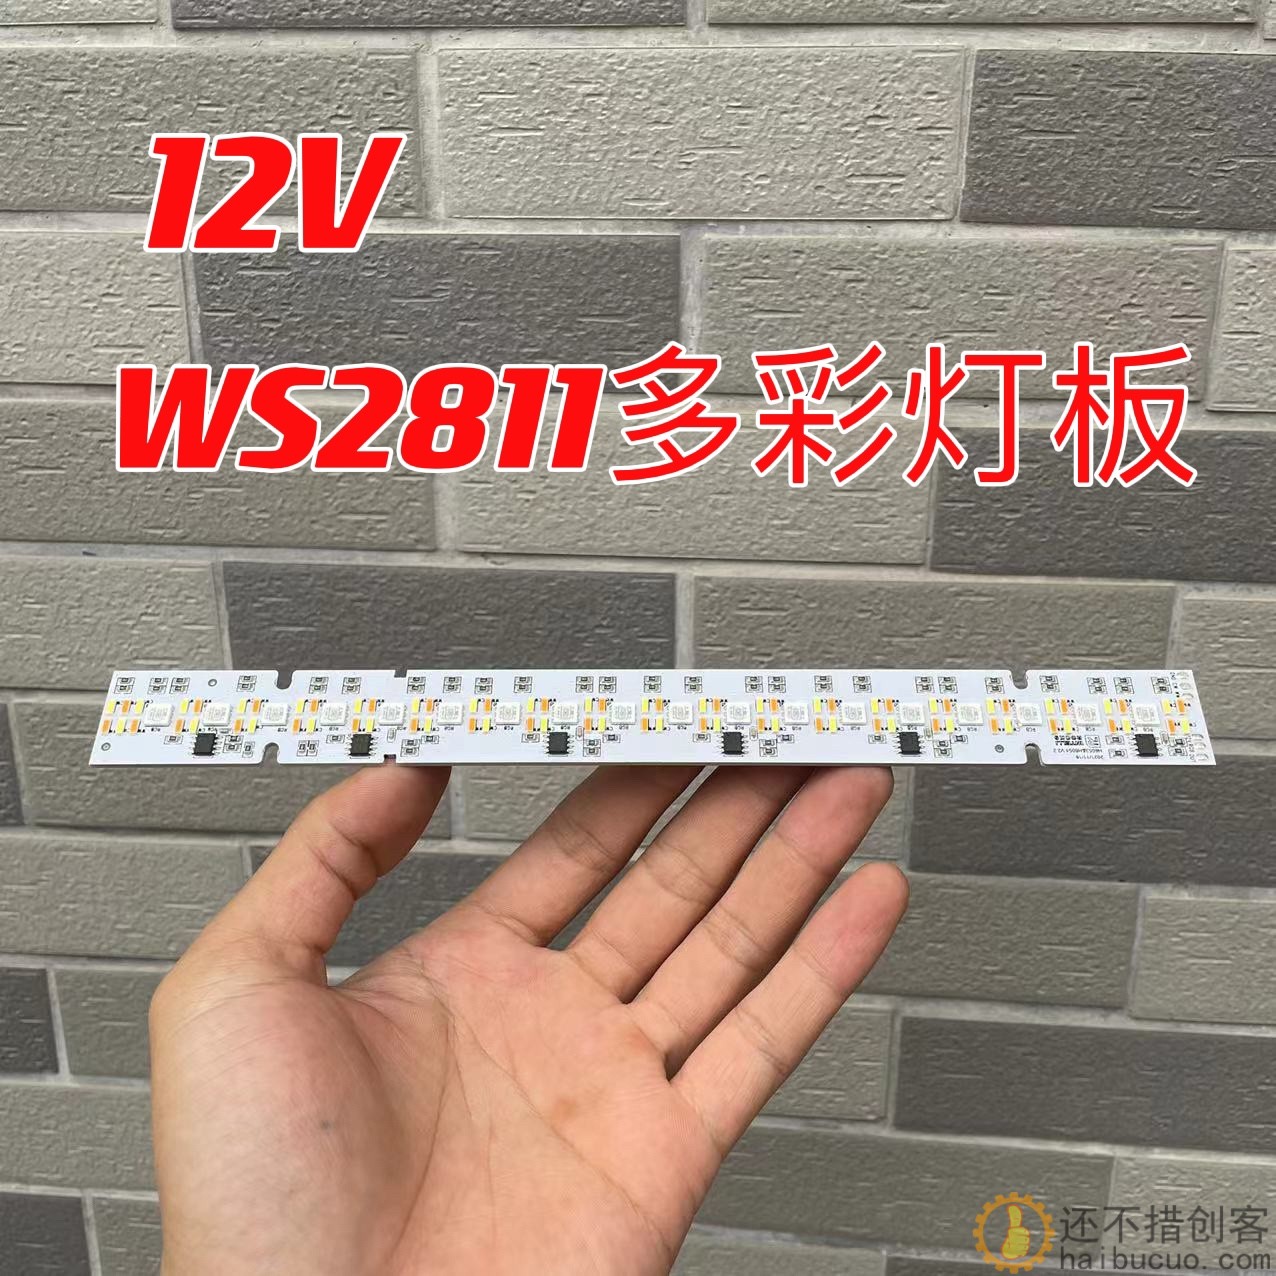 WS2811幻彩多彩灯板 彩色+暖白光灯板 可编程流水光跑马灯板